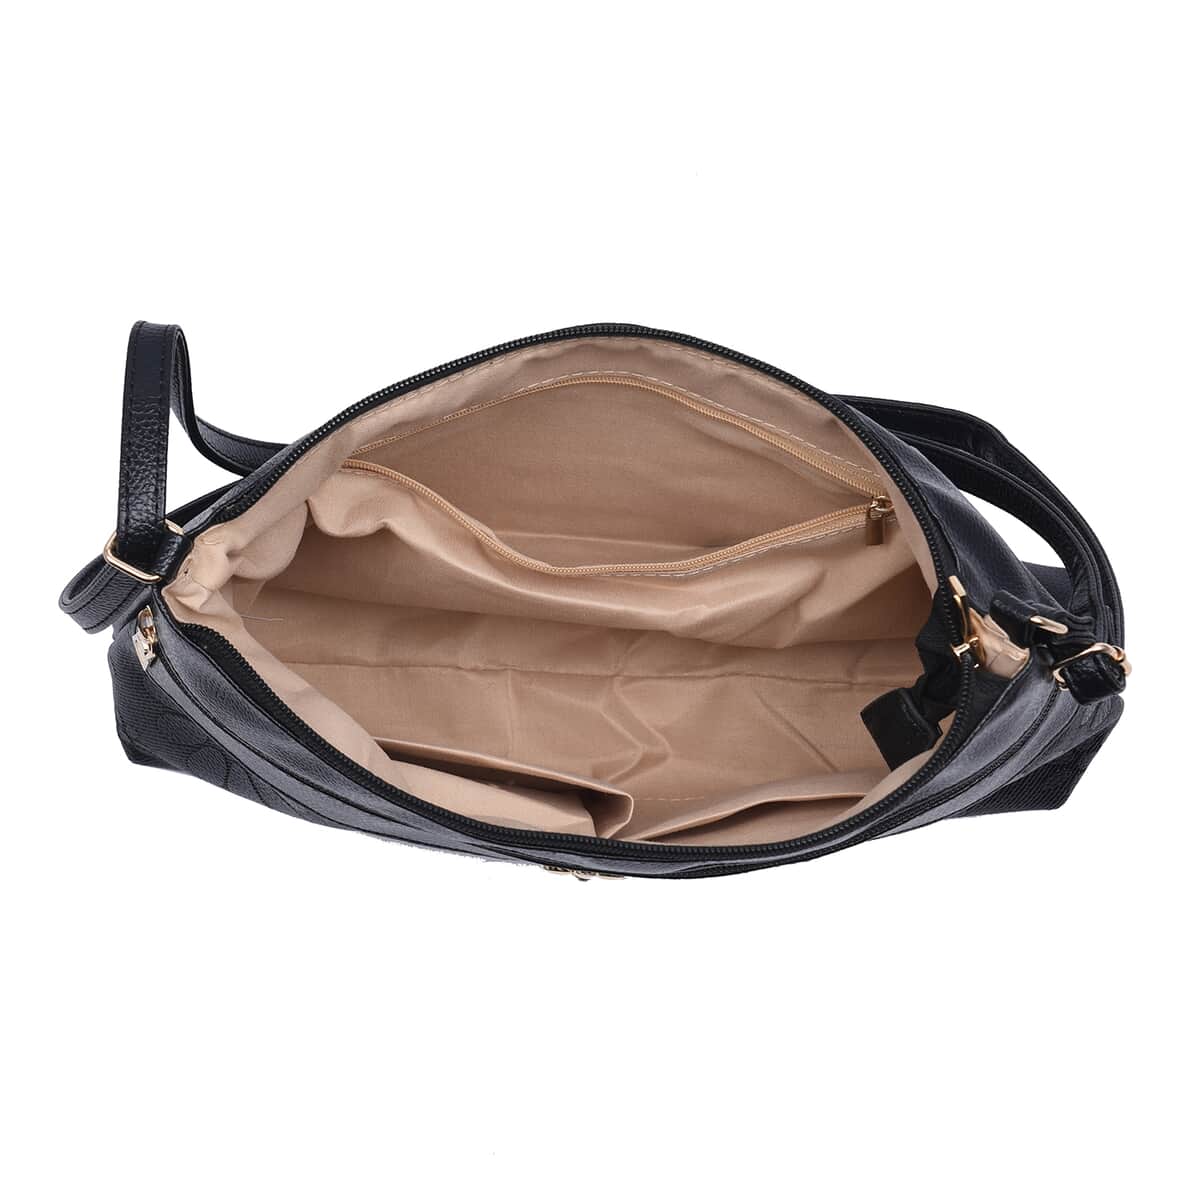 Black Faux Leather Crossbody Bag with Metal Flower and Adjustable Shoulder Strap image number 5